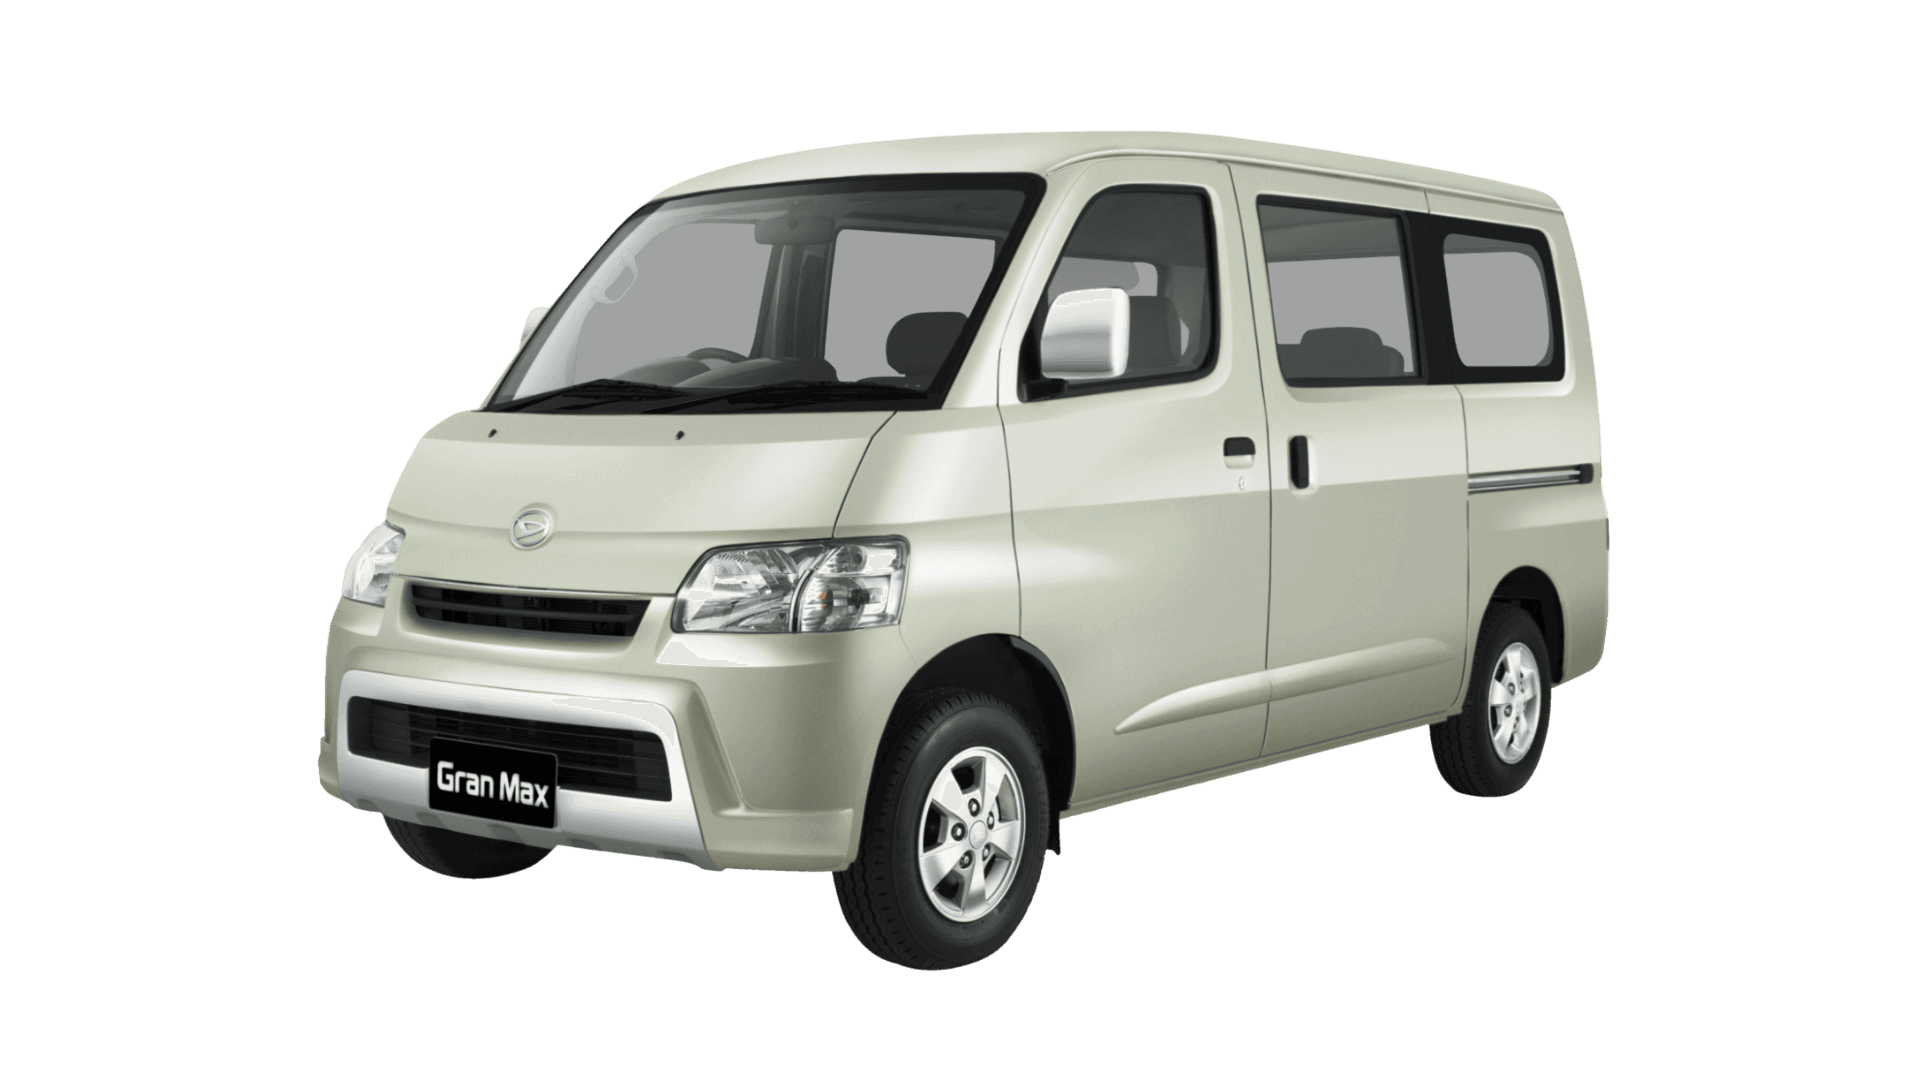 TRAC - MVP Car - Granmax Minibus Variant 0.png